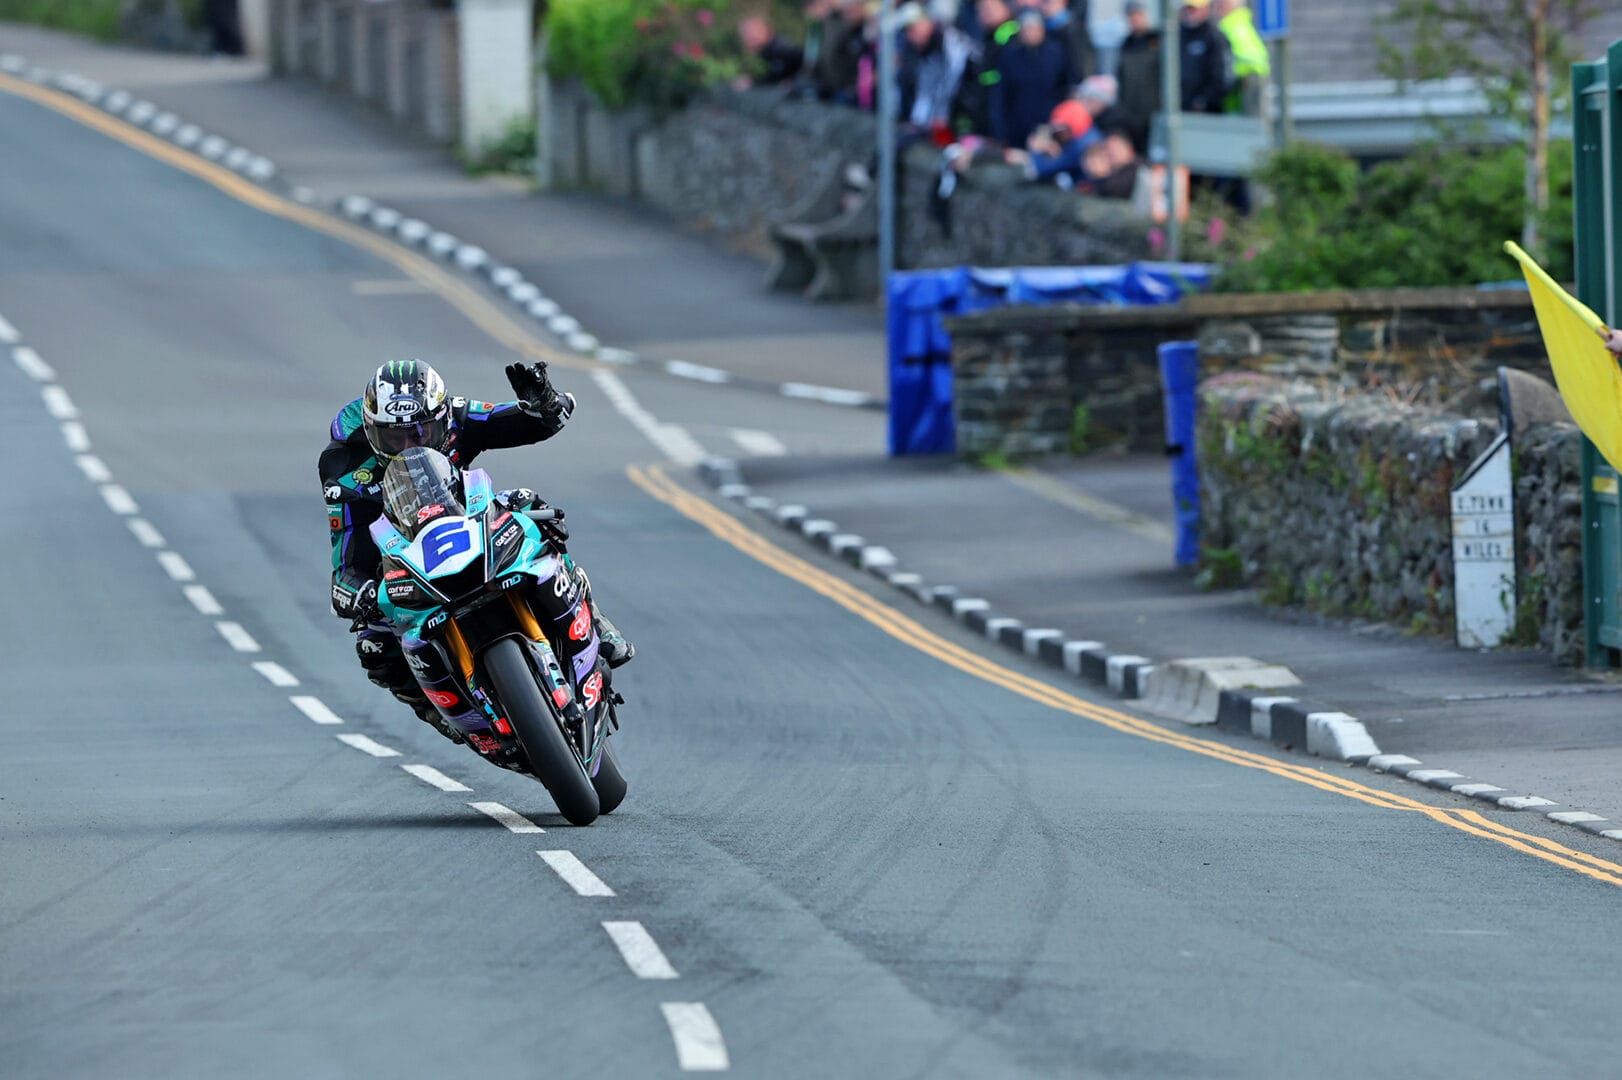 Hickman folytatja a száguldást a Man-szigeti TT-n, miután Dunlop motort váltott